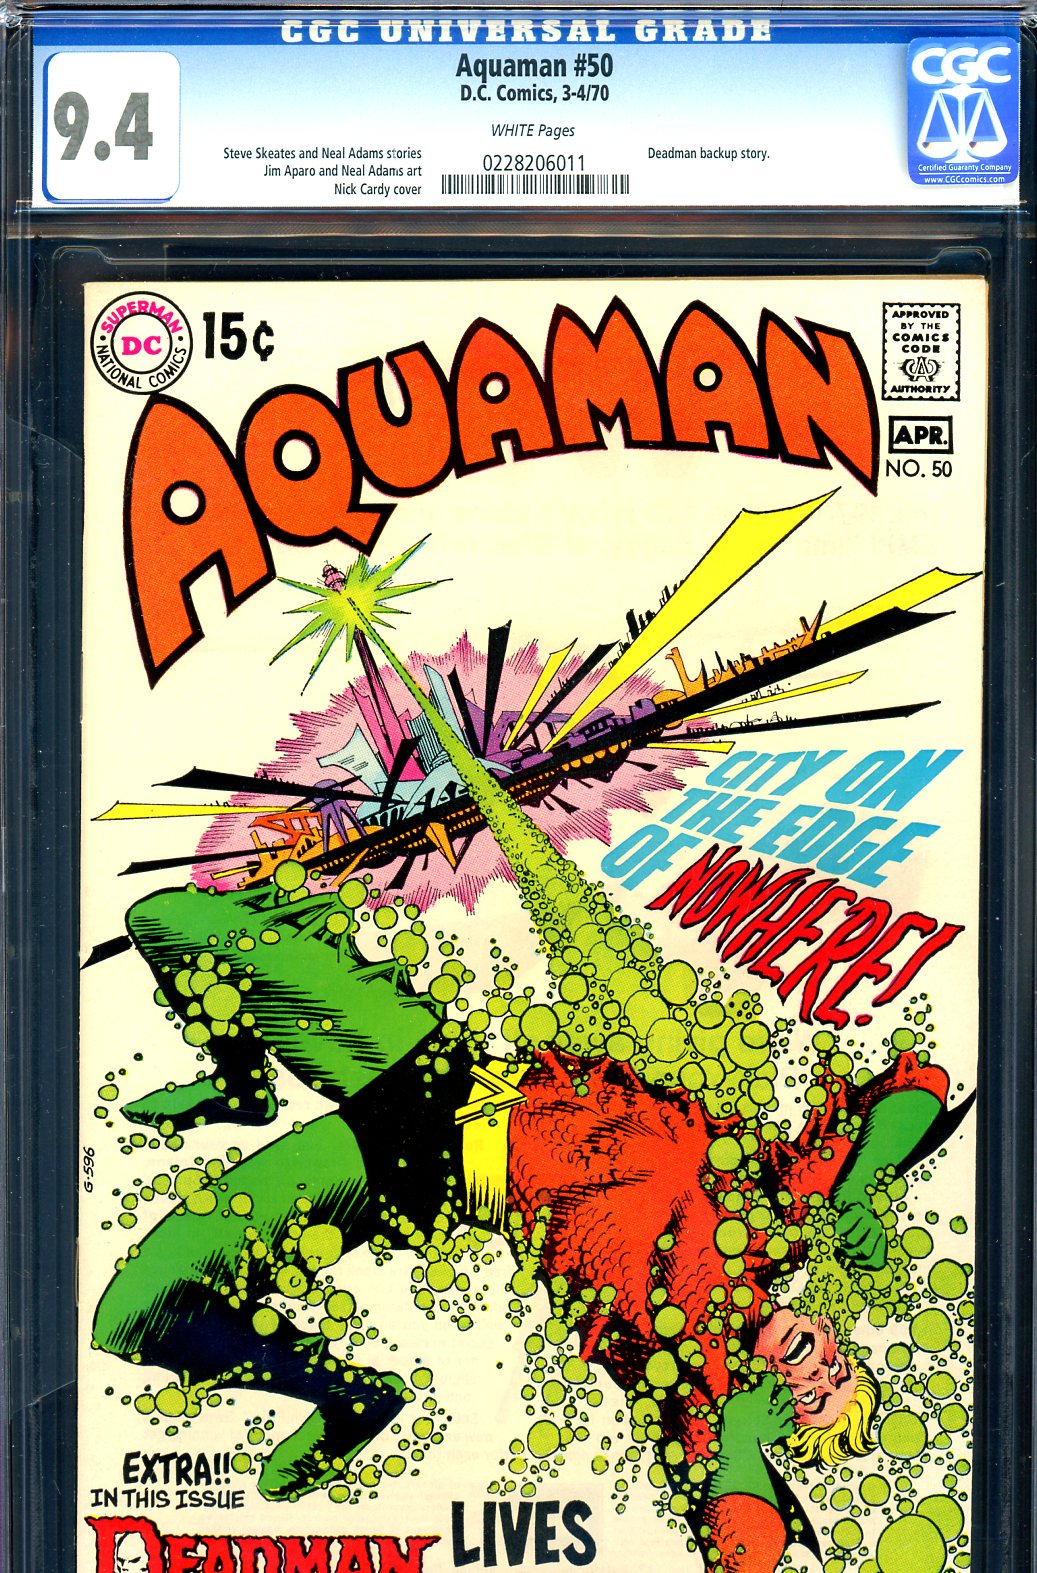 Aquaman #50 CGC 9.4 w